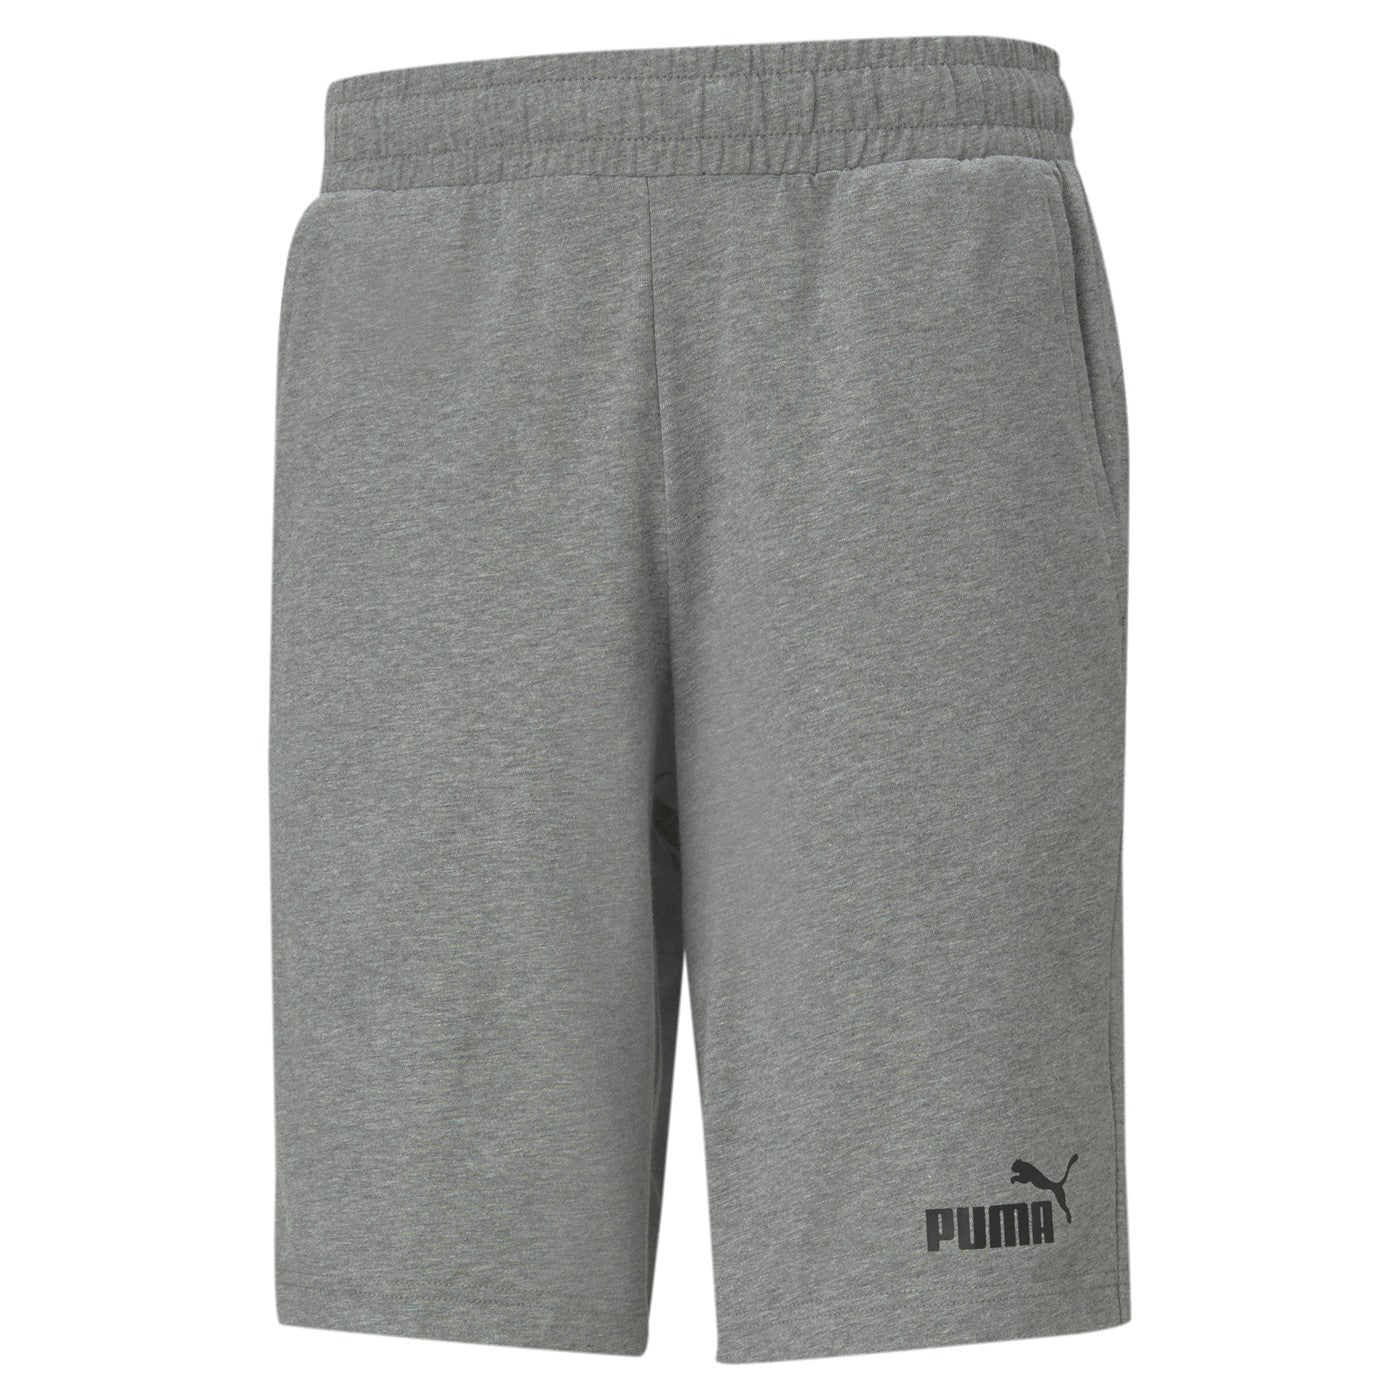 Puma Pantaloncino sportivo da uomo in cotone Jersey 586706 03 grigio